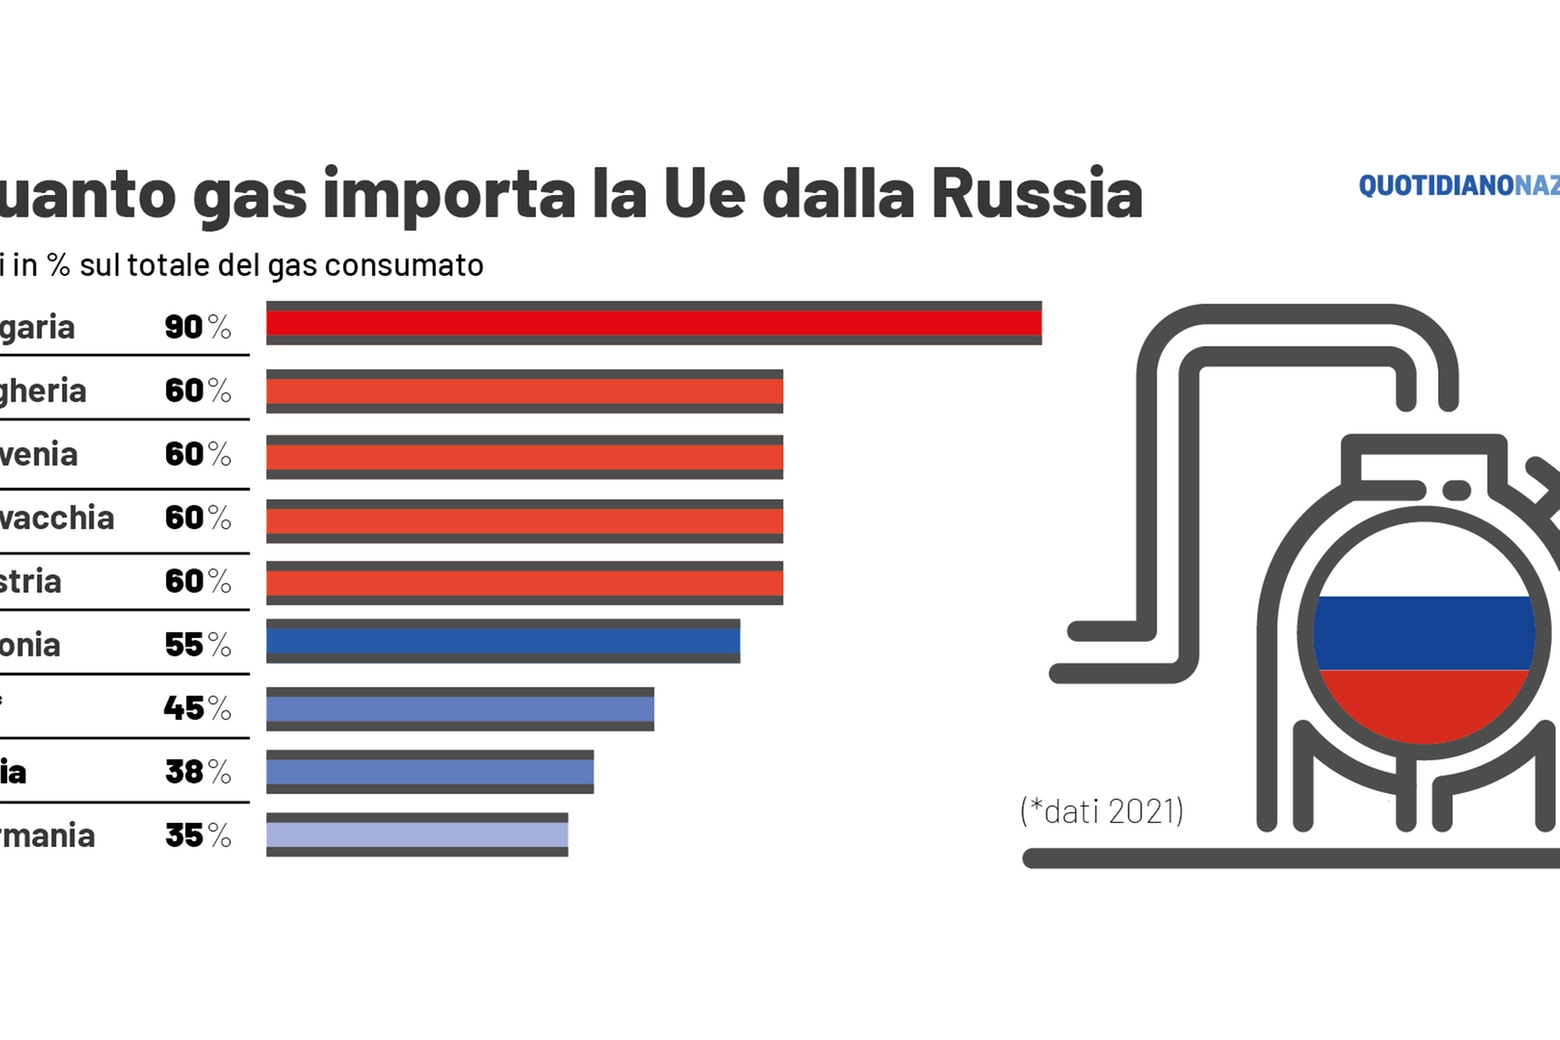 Quanto gas importa la Ue dalla Russia